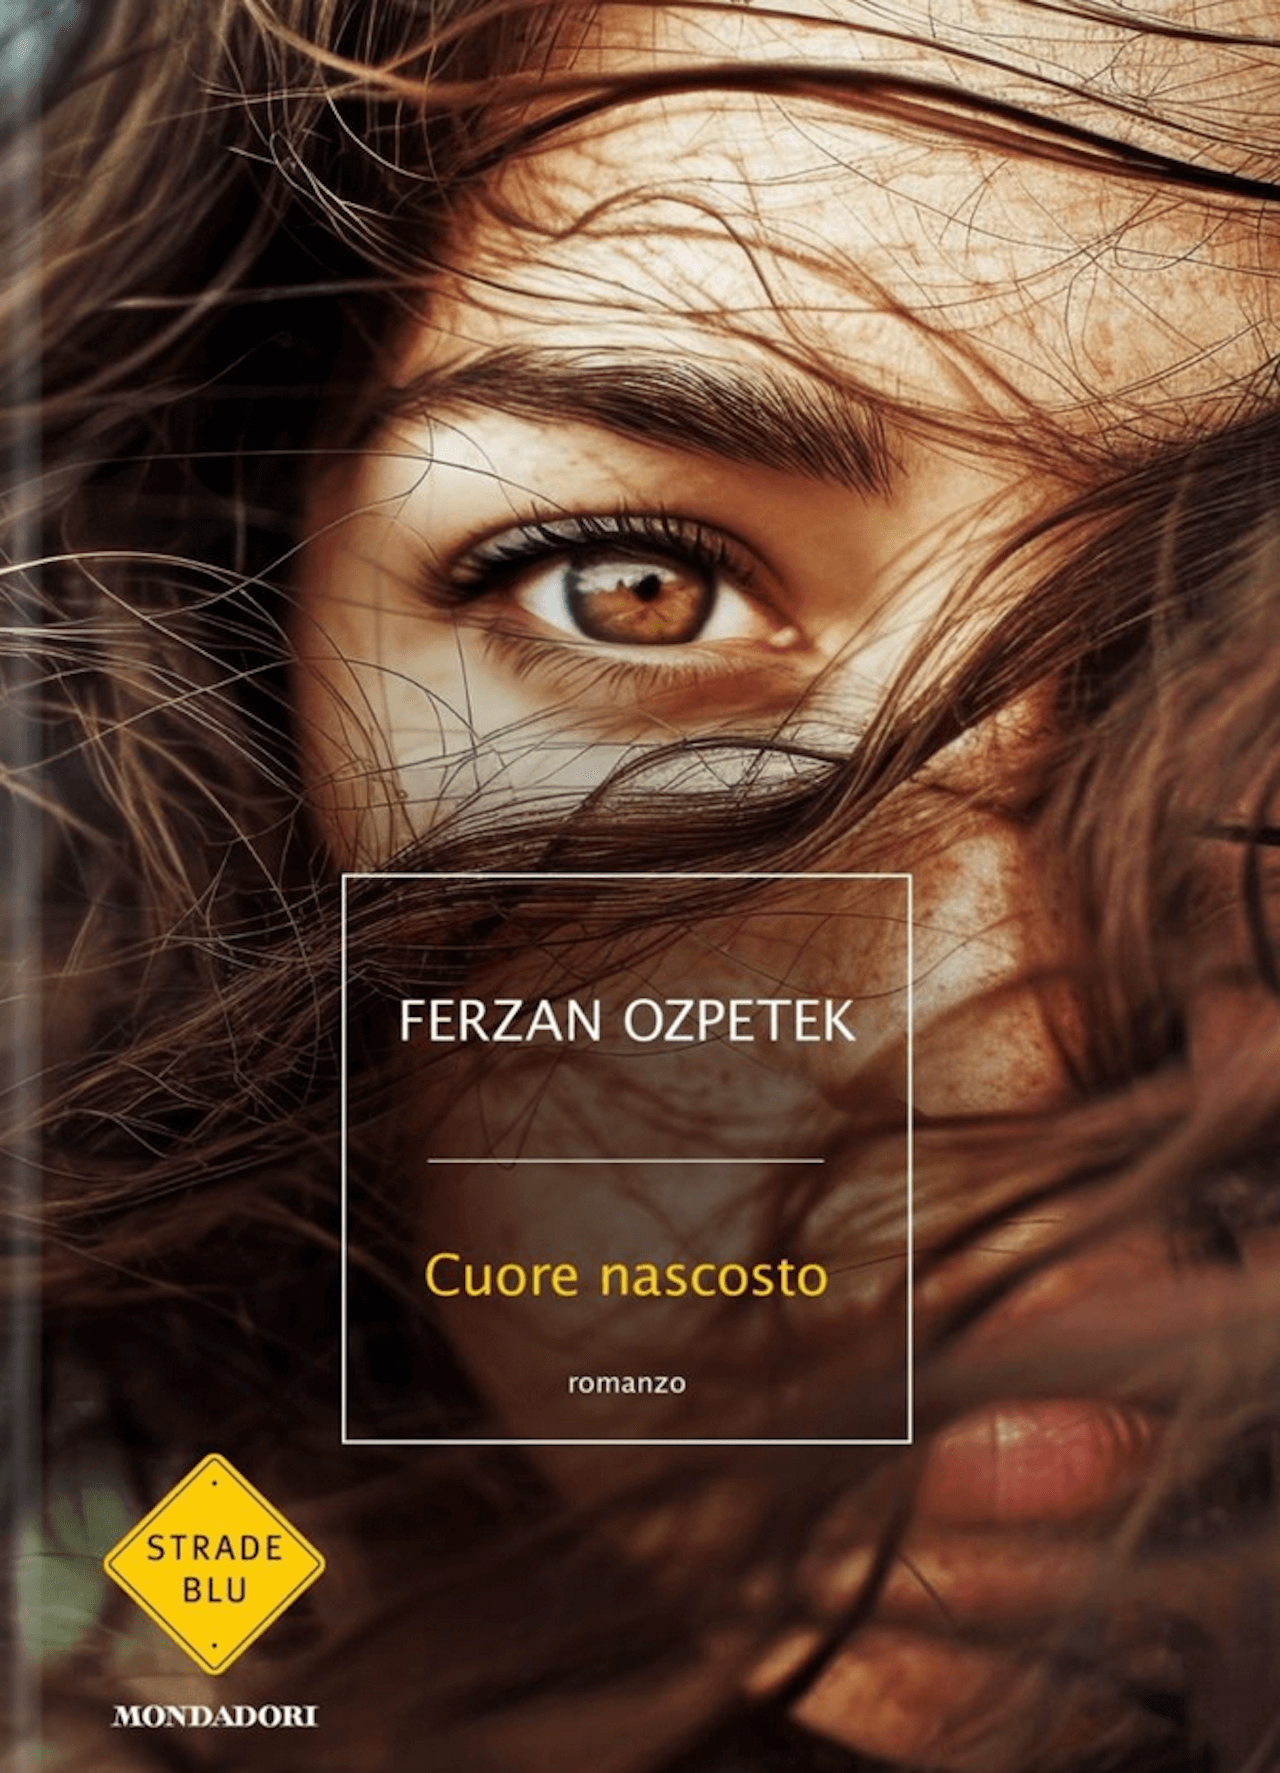 Cuore Nascosto è il nuovo romanzo di Ferzan Ozpetek, data d'uscita e trama - Cuore Nascosto e il nuovo romanzo di Ferzan Ozpetek - Gay.it